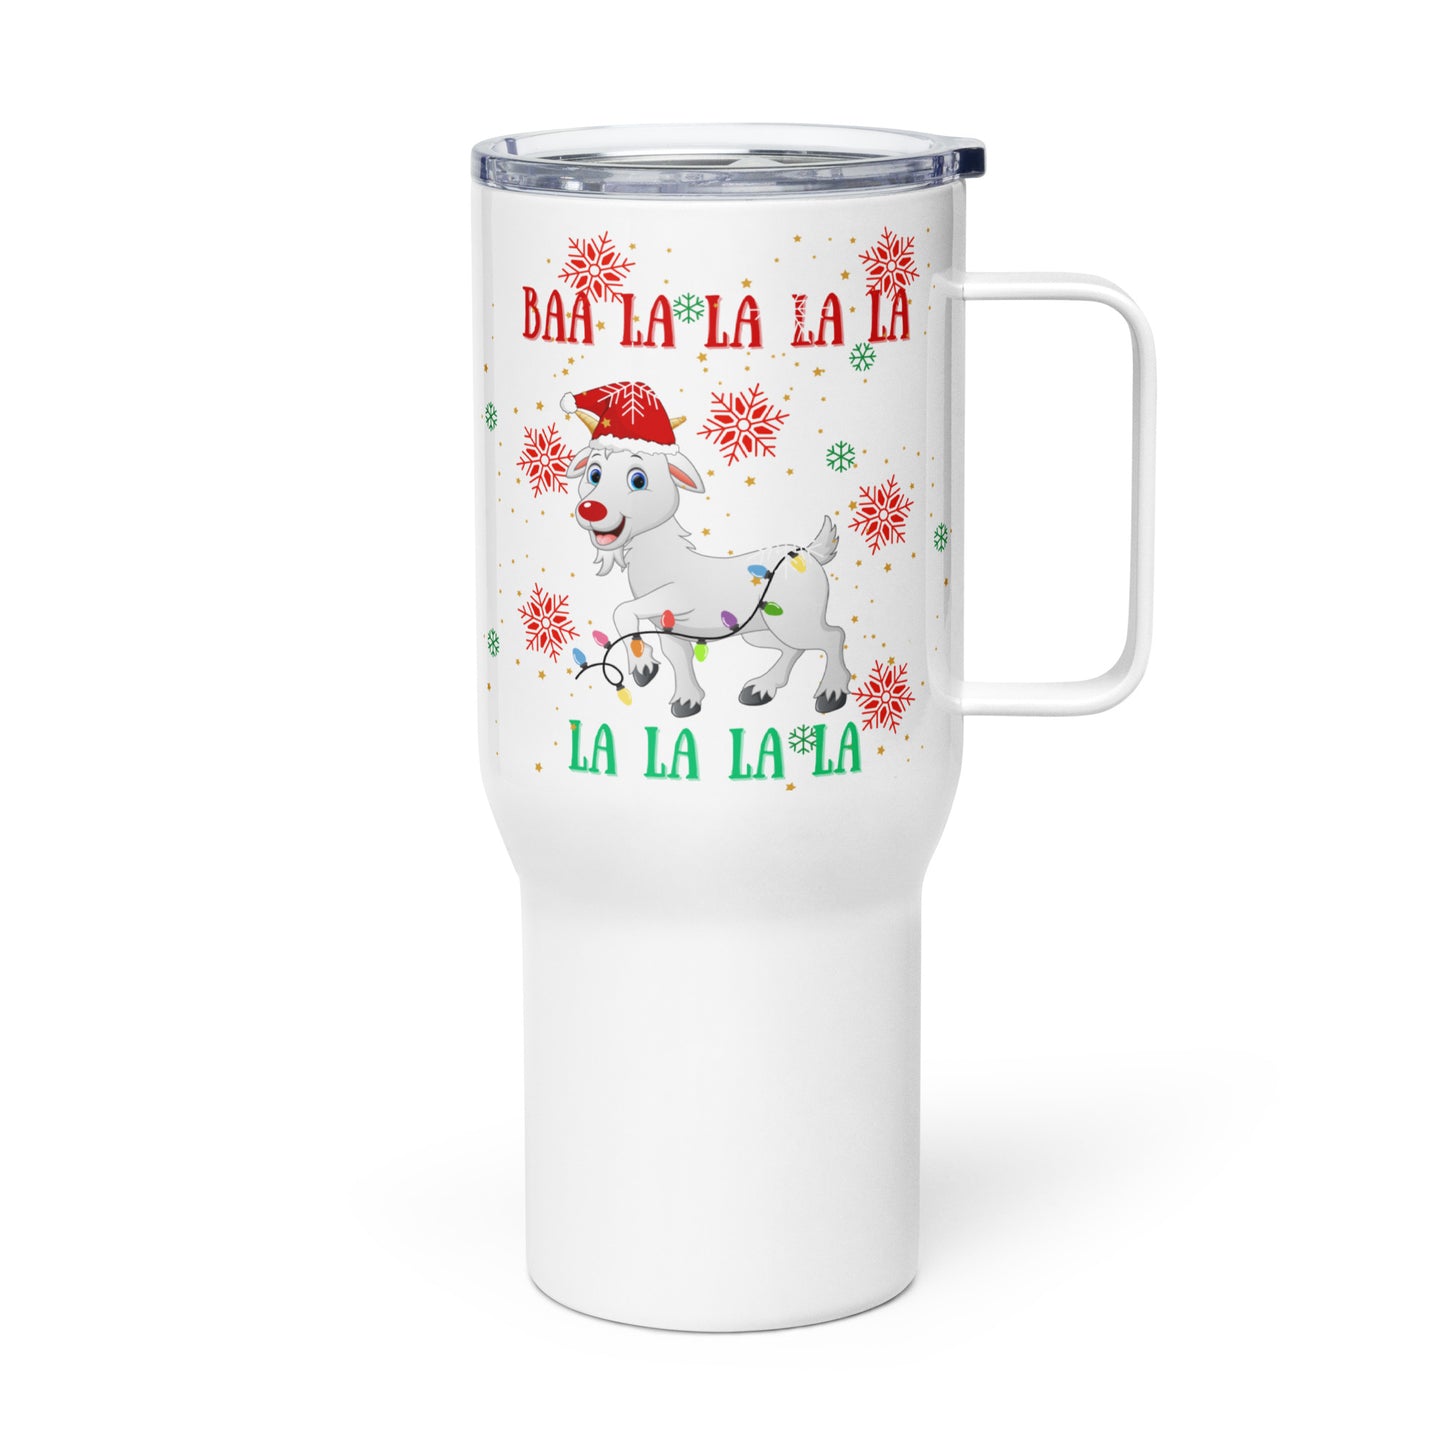 BAA LAA LAA LAA LAA: Travel mug with a handle